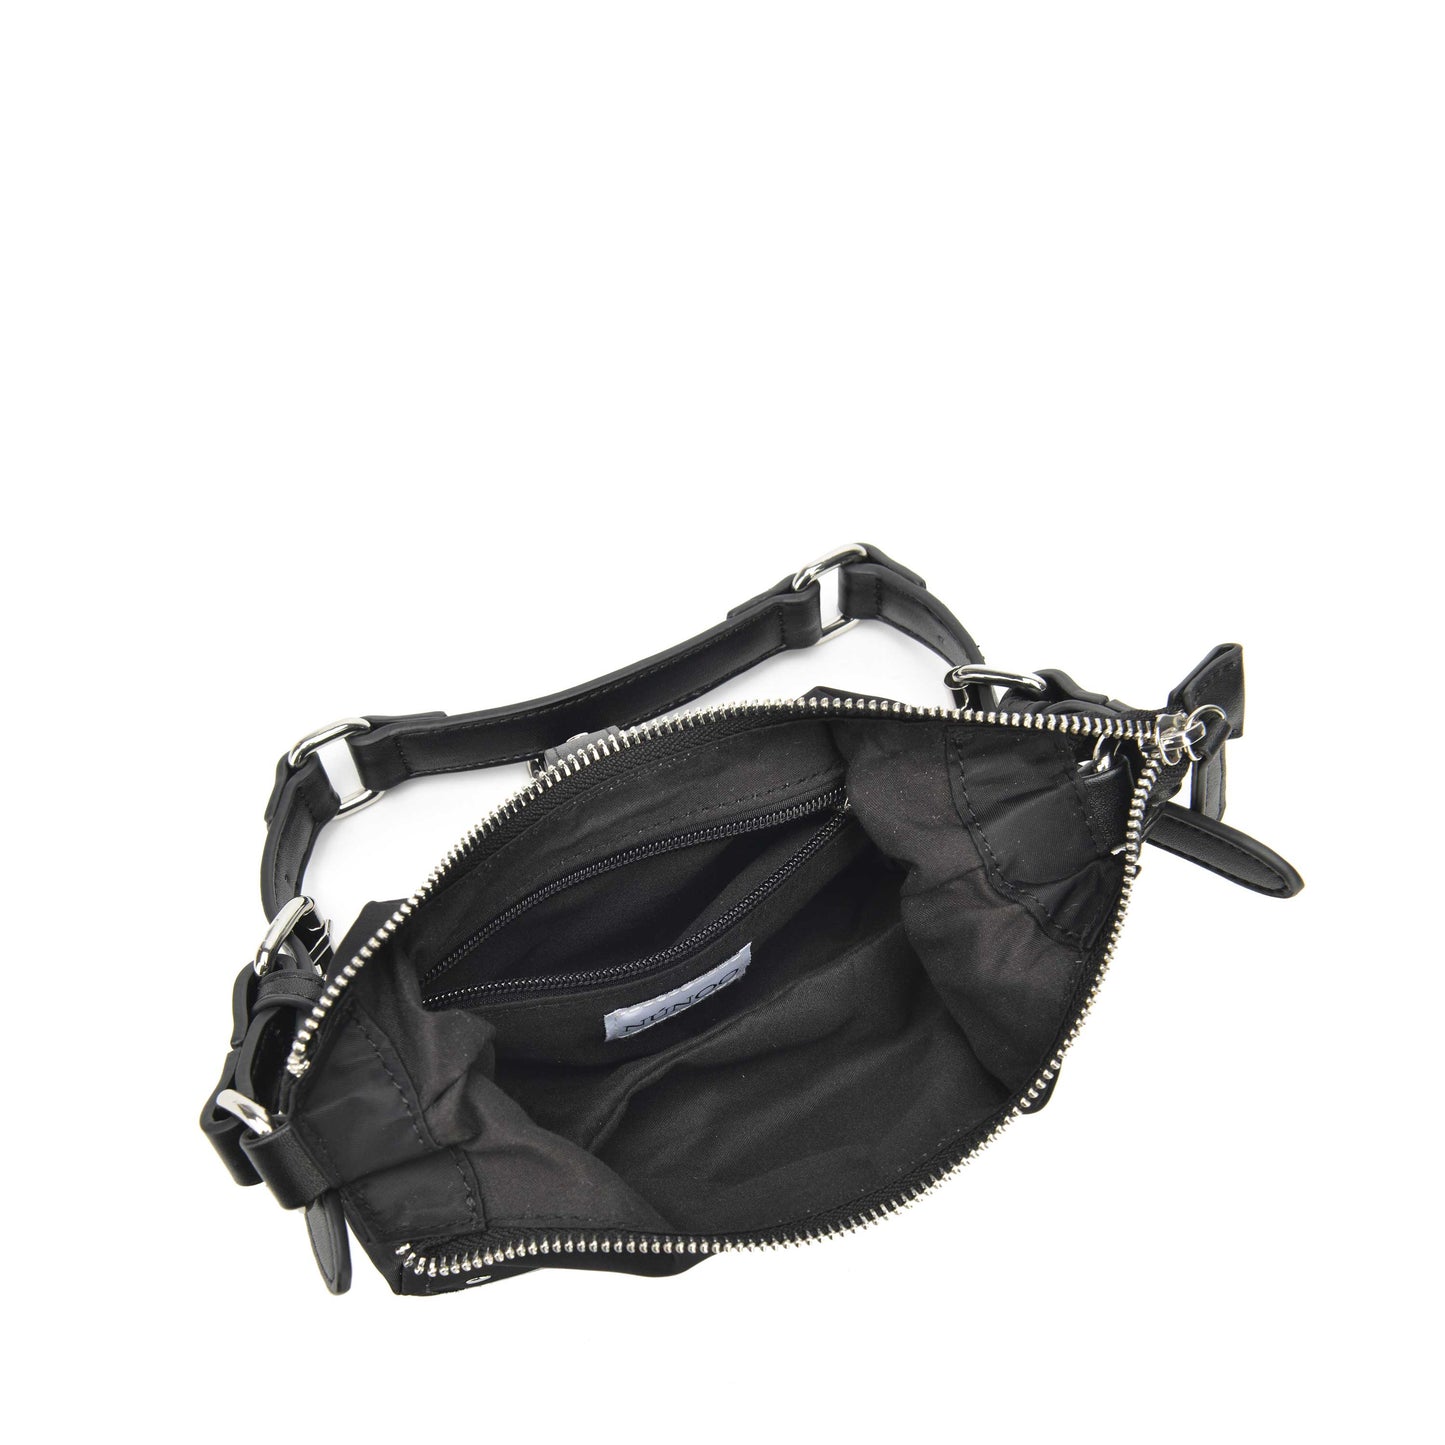 Núnoo Palma recycled nylon black Small bag Black